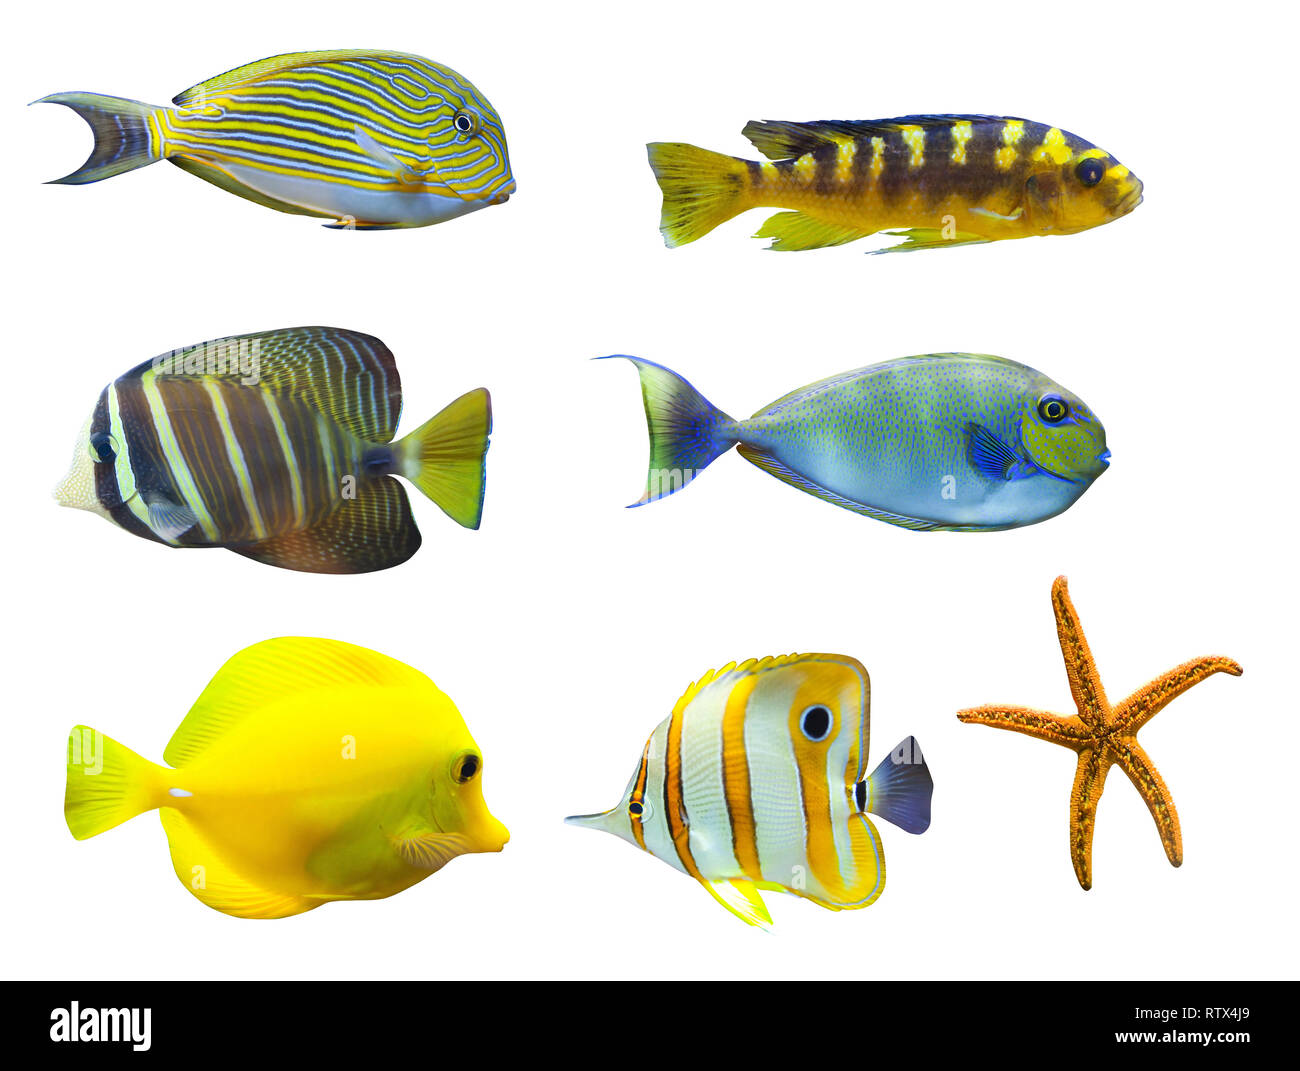 Tropische Fische - auf weißem Hintergrund. Von oben nach rechts: Acanthurus sohal - sohal Tang, Nimbochromis venustus, Zebrasoma desjardini - Sailefi Stockfoto